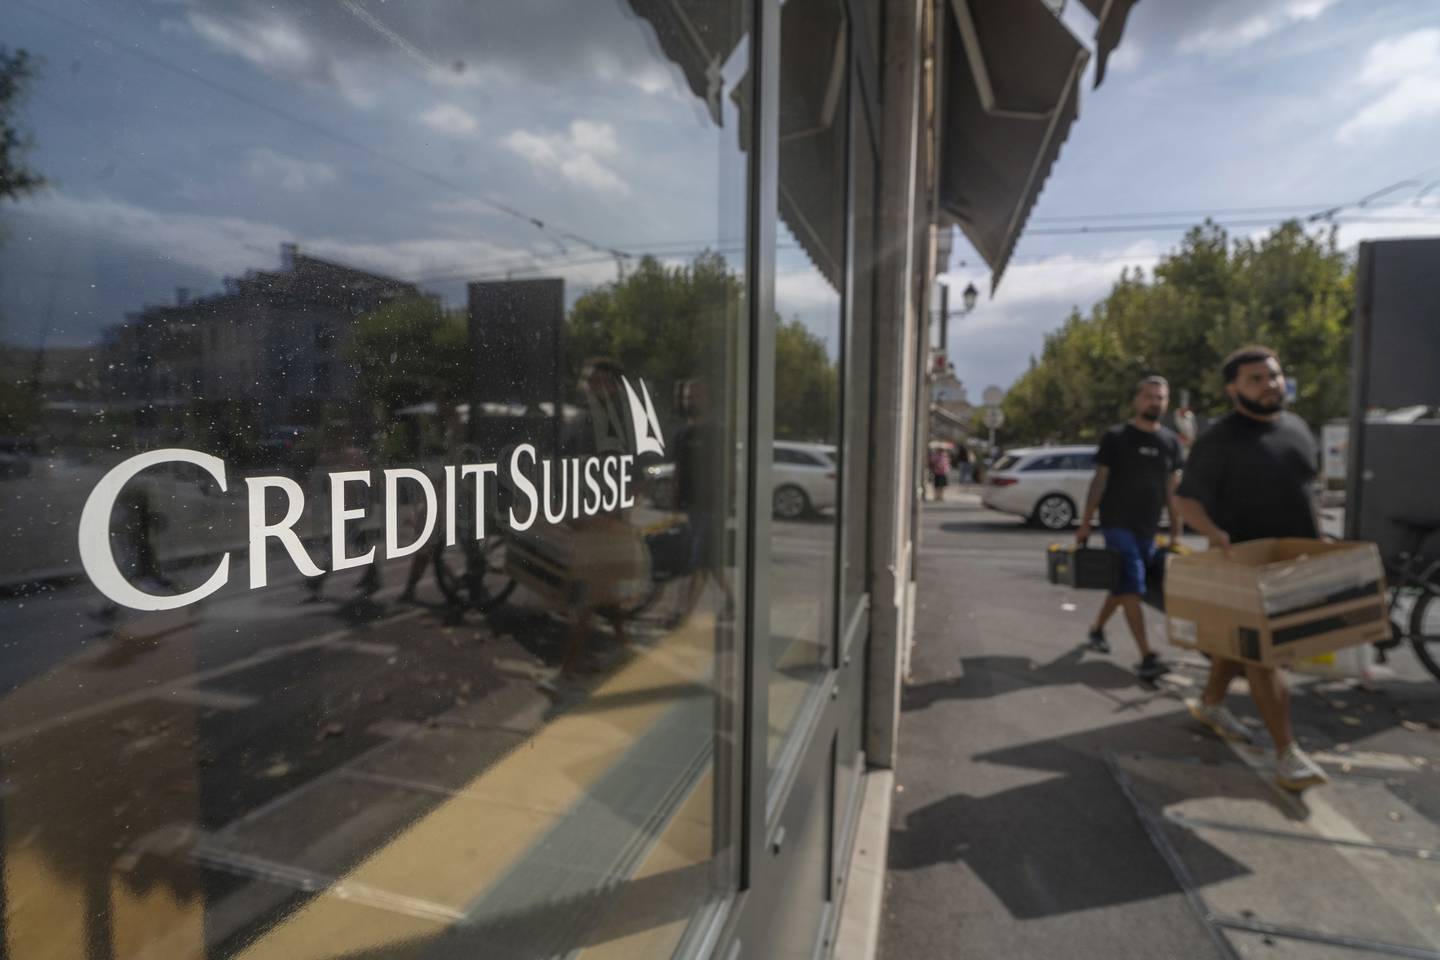 El logo de Credit Suisse